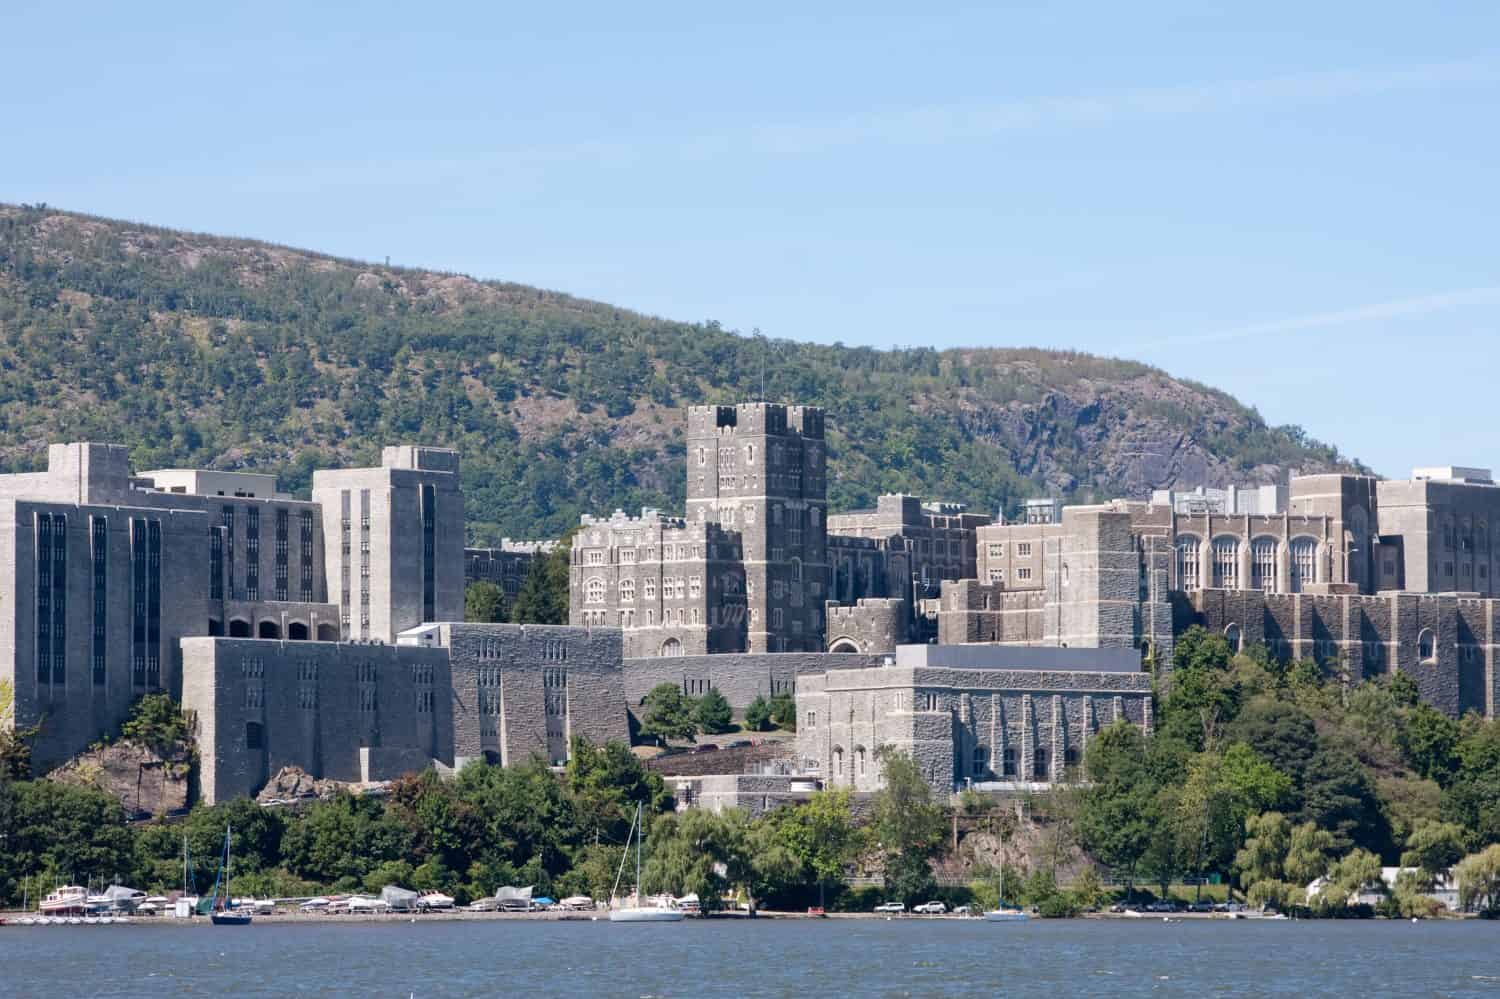 West Point ripreso dall'altra parte del fiume Hudson.